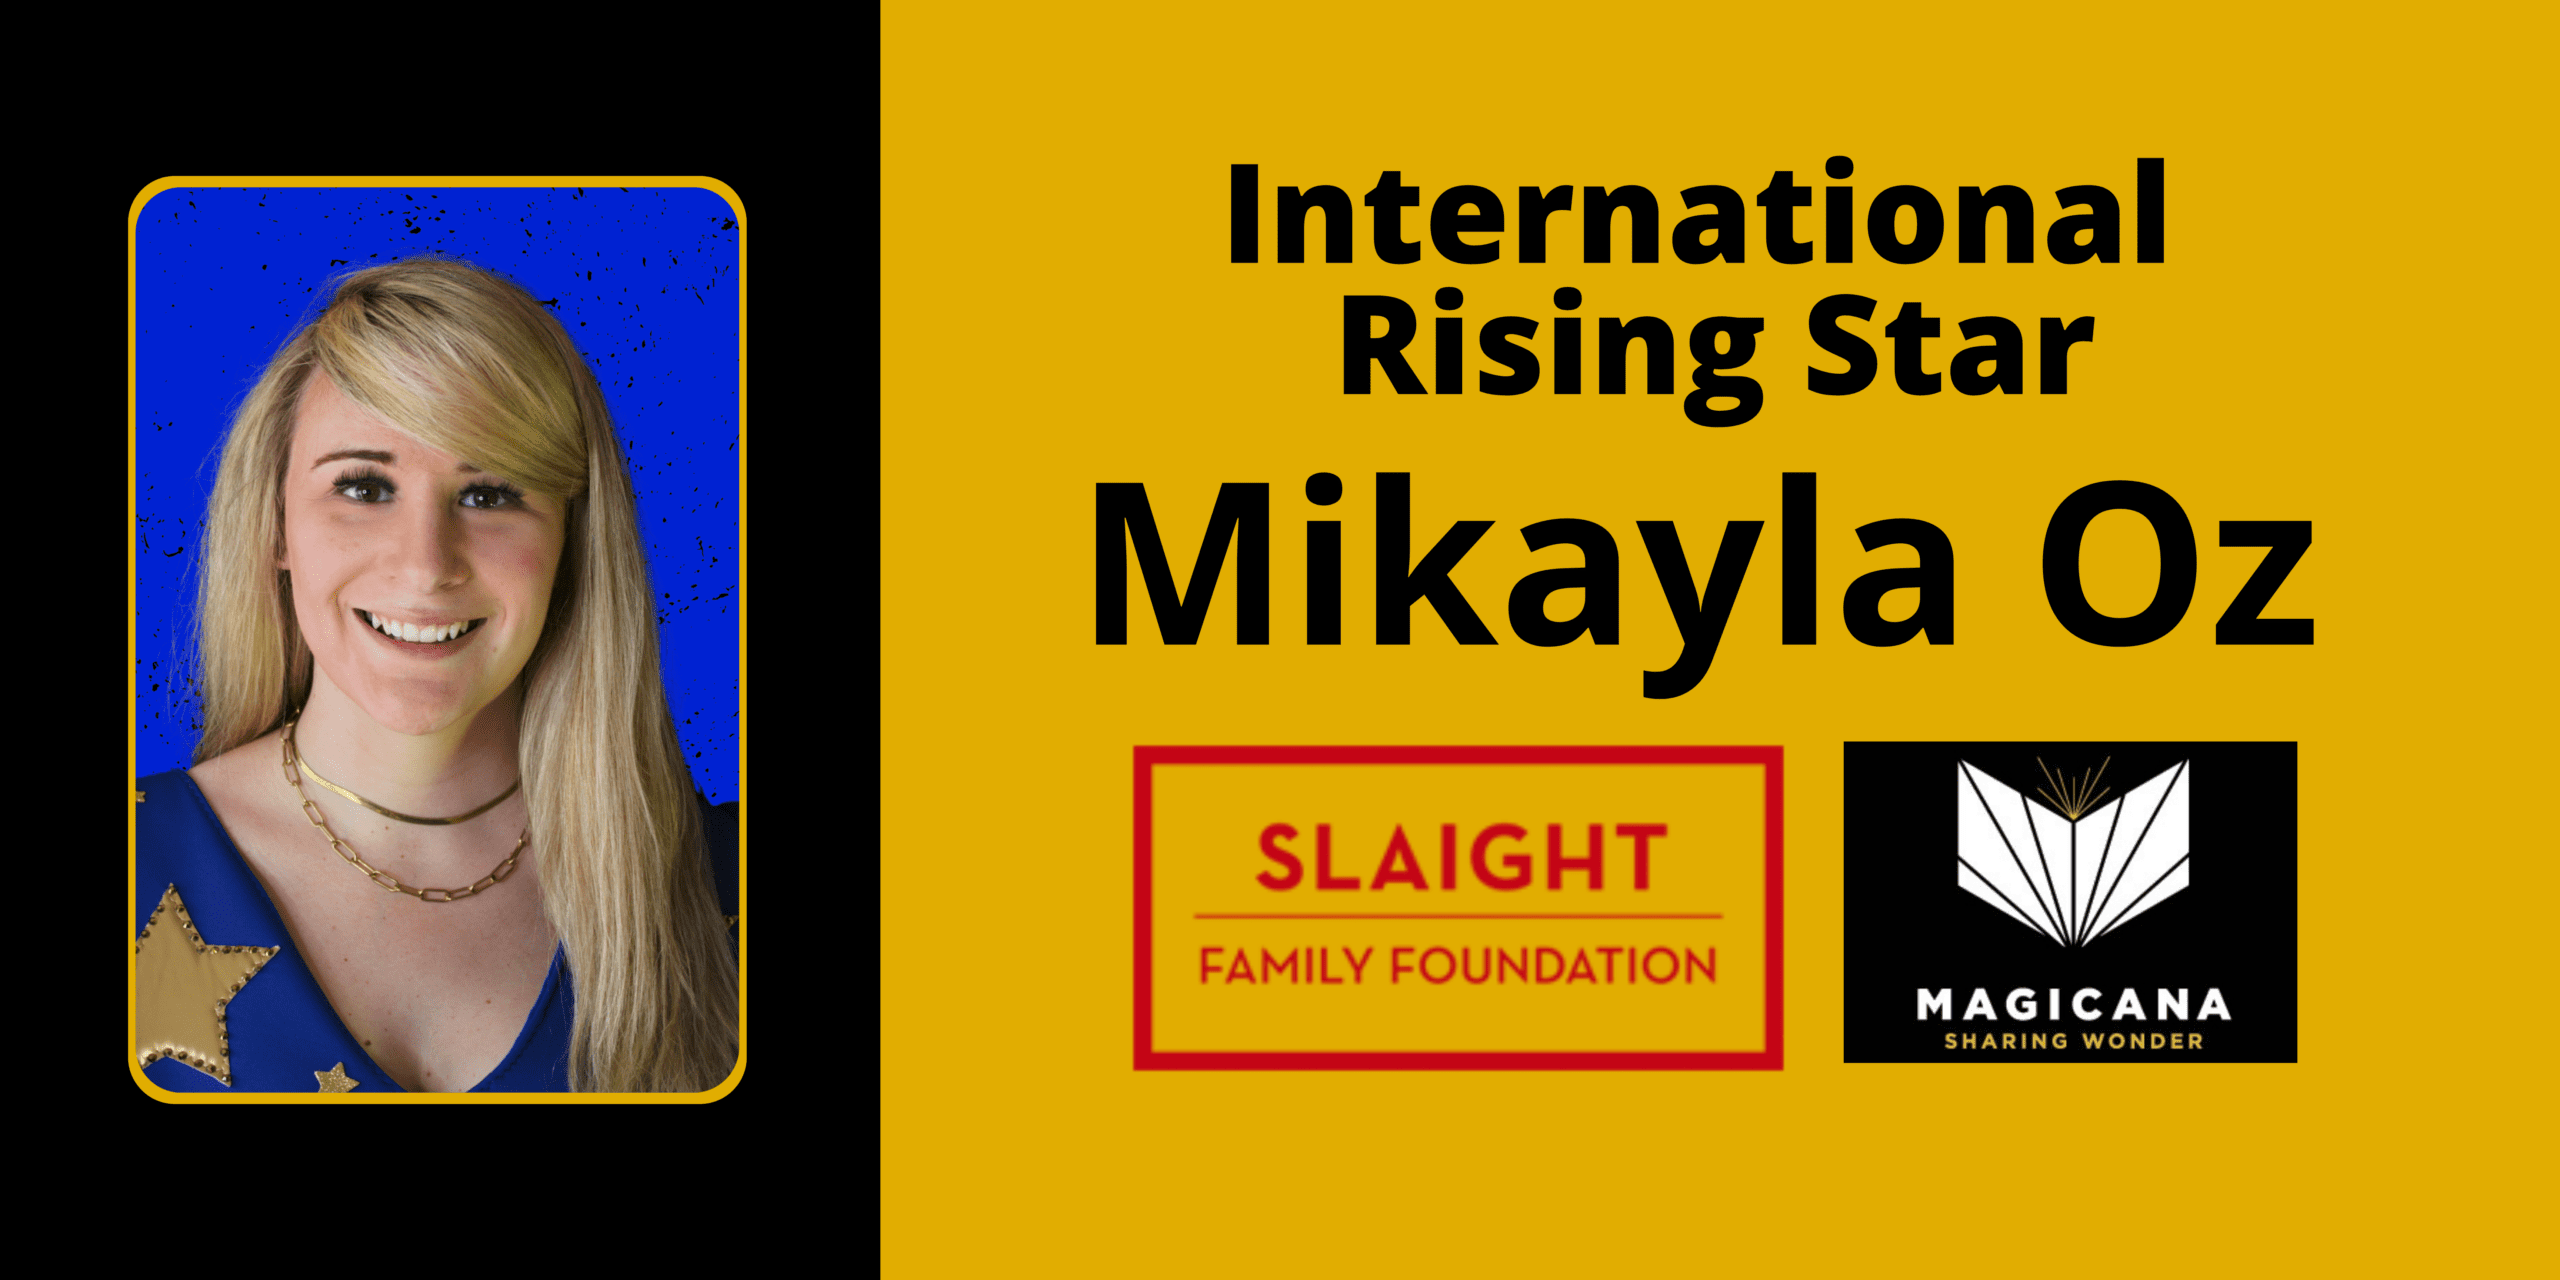 Magicana Allan Slaight Award - Mikayla Oz